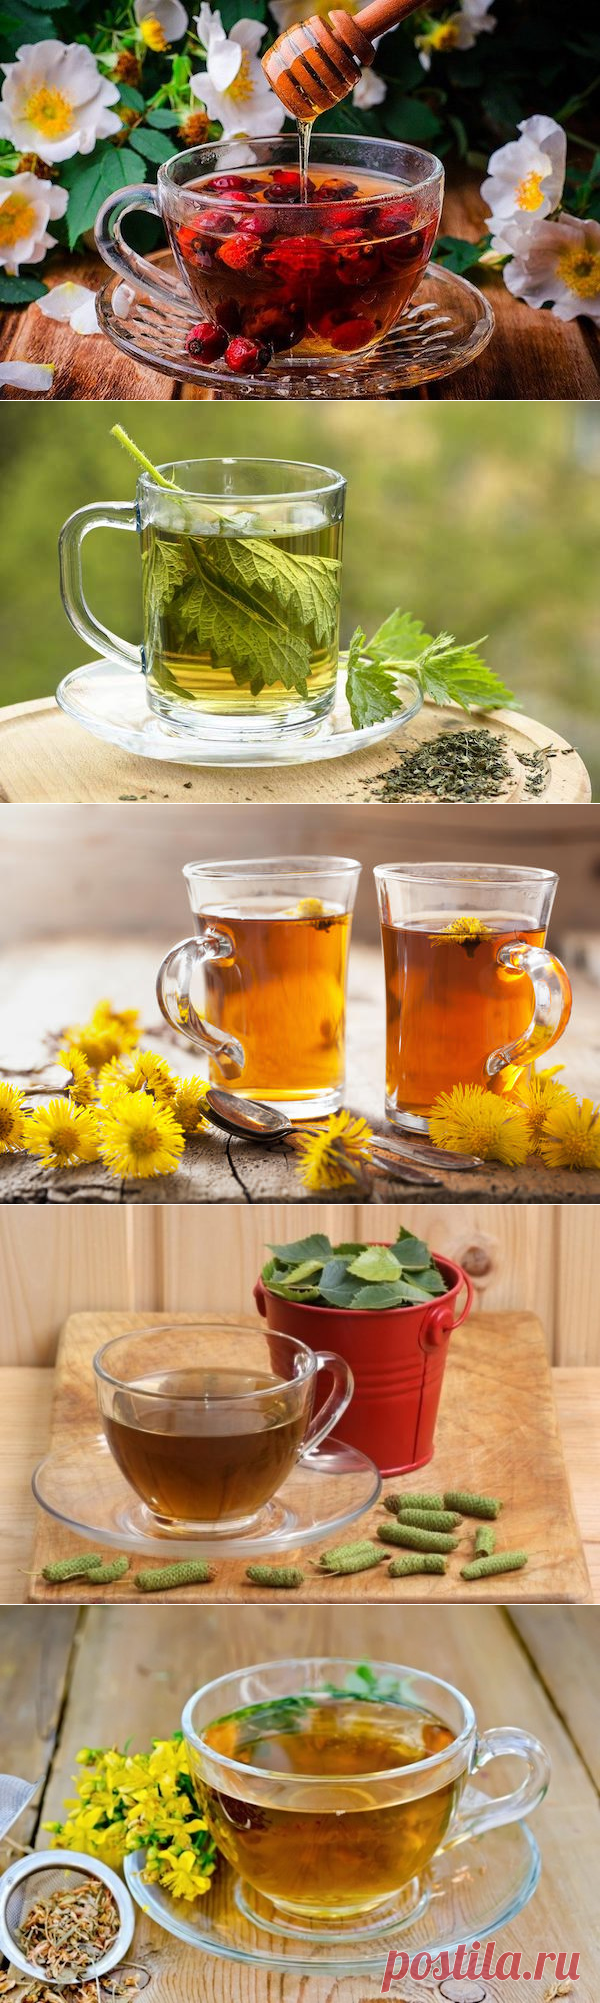 Как укрепить иммунитет и снизить тревожные симптомы при помощи травяного чая